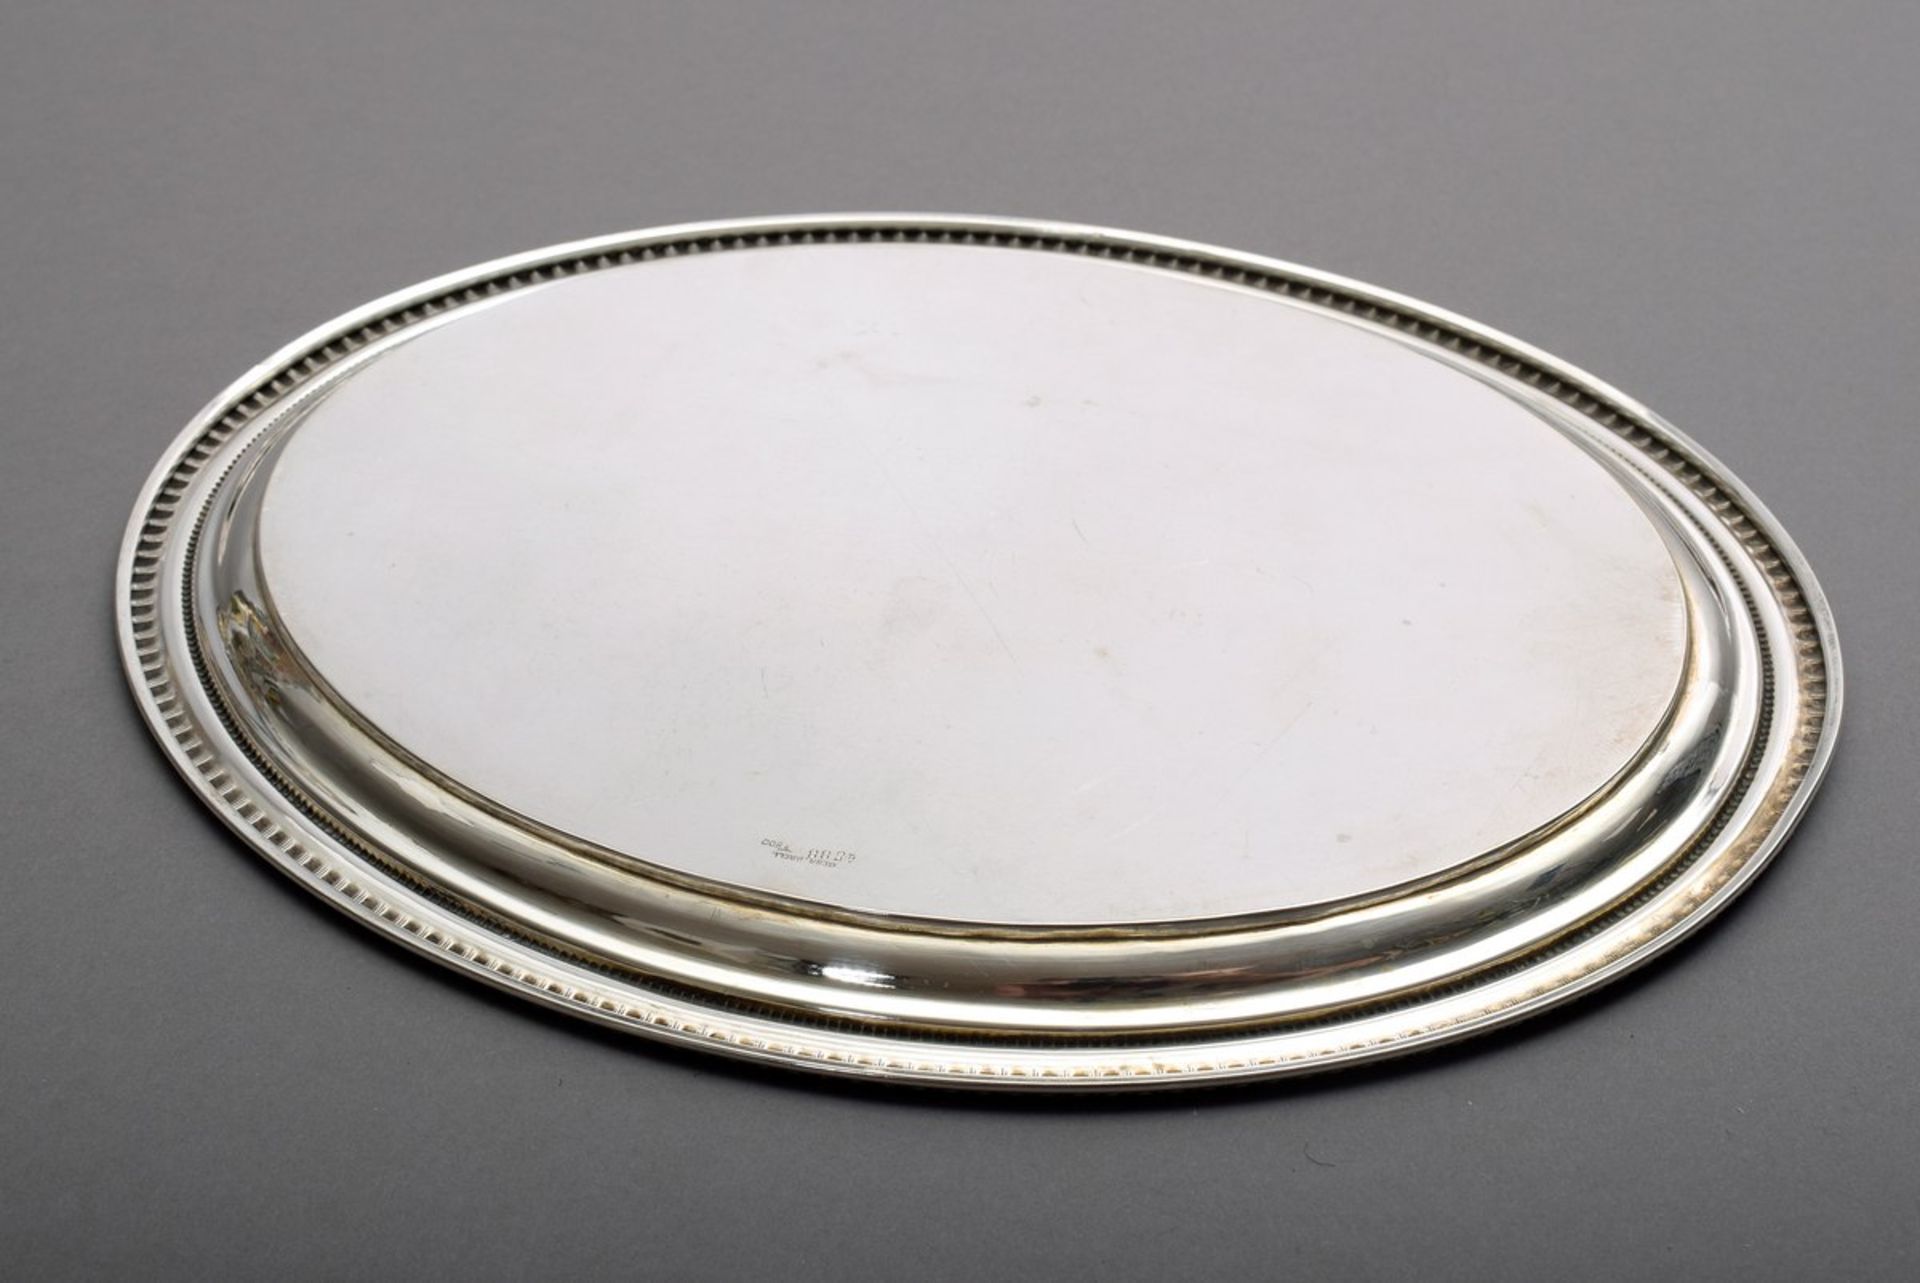 Kleines ovales Tablett mit Rillenrand und floraler Gravur sowie ligiertem Monogramm "AMC", Koch & - Bild 3 aus 4